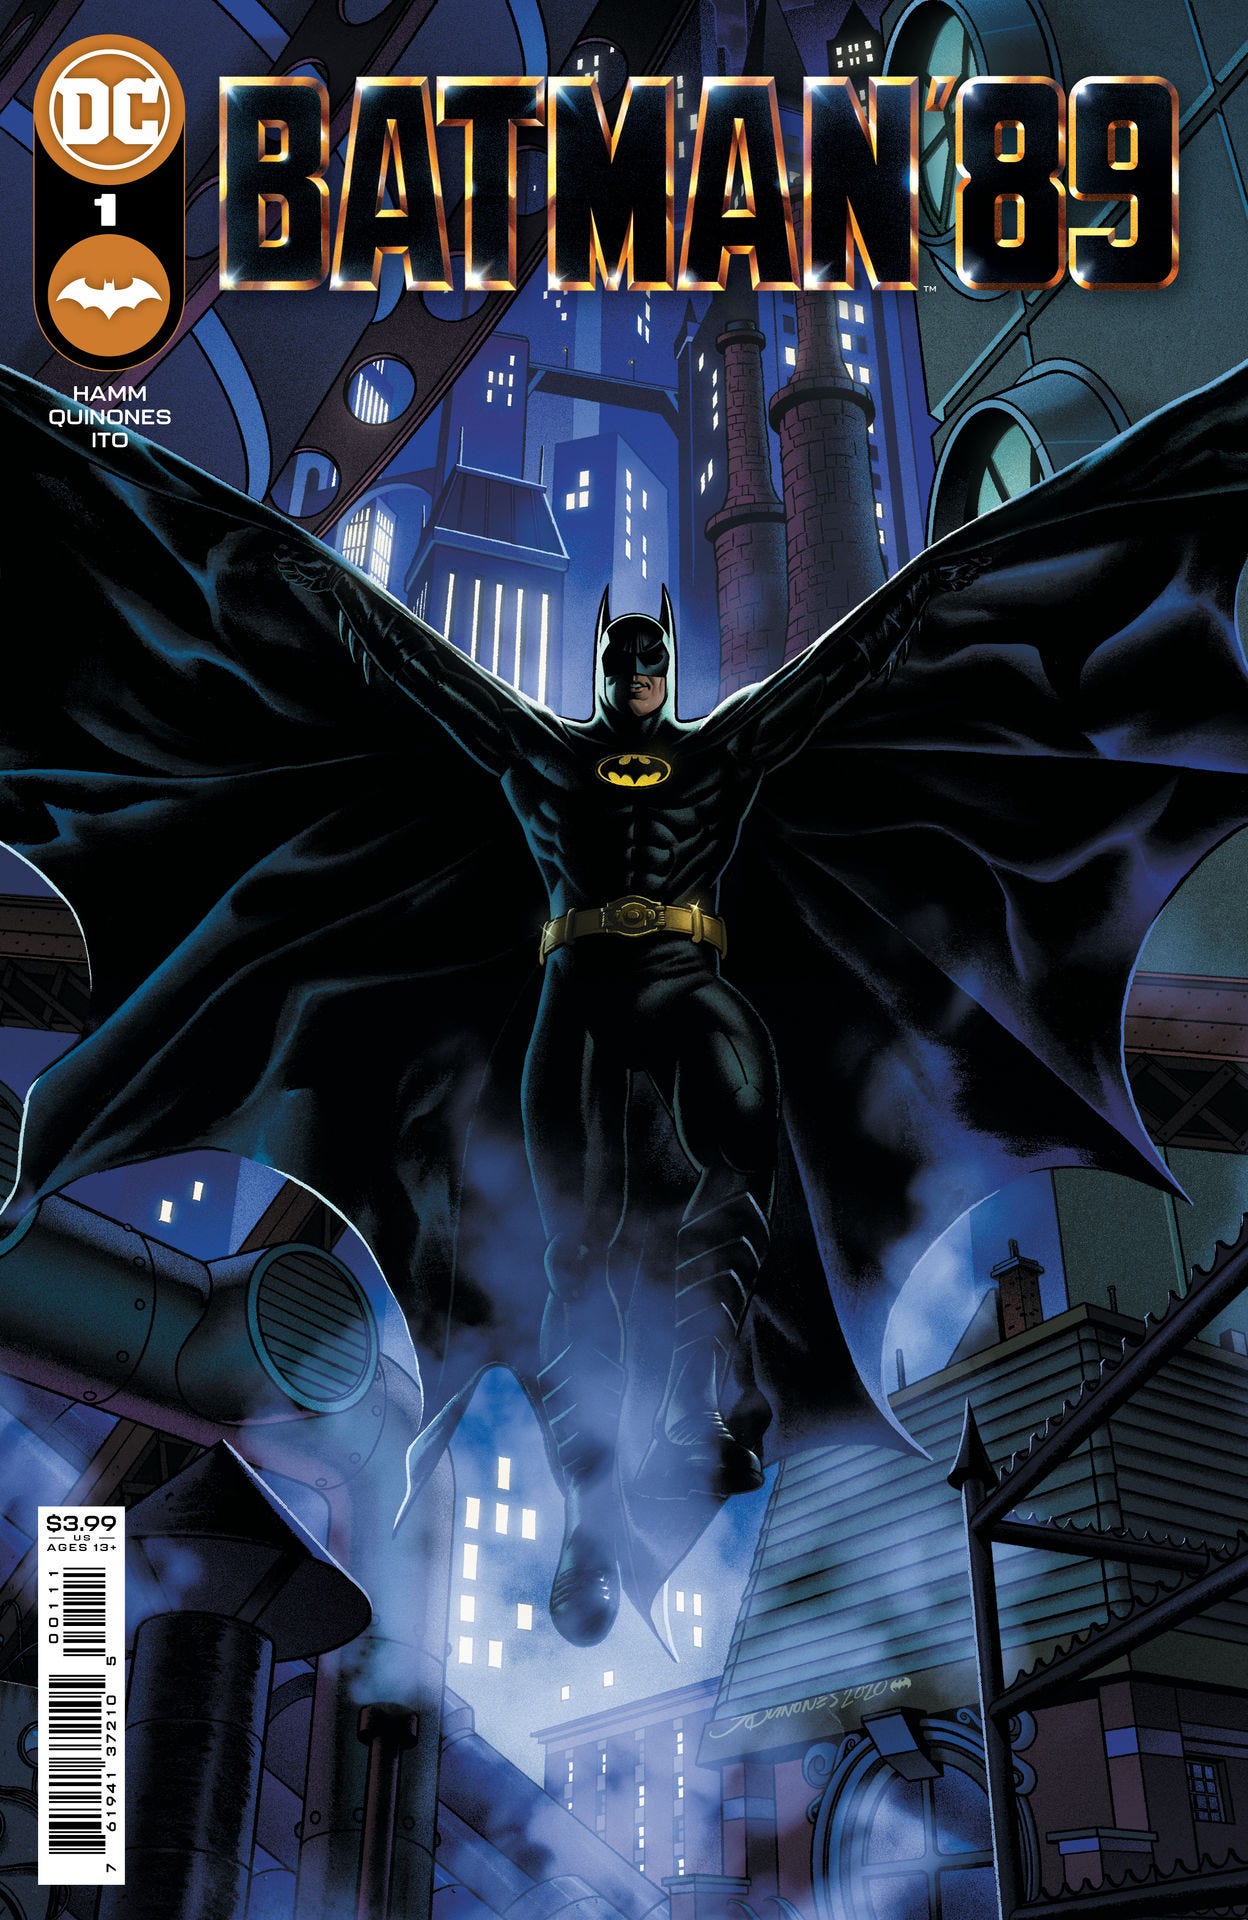 Batman 89 #1 (of 6) (Cover A - Joe Quinones)